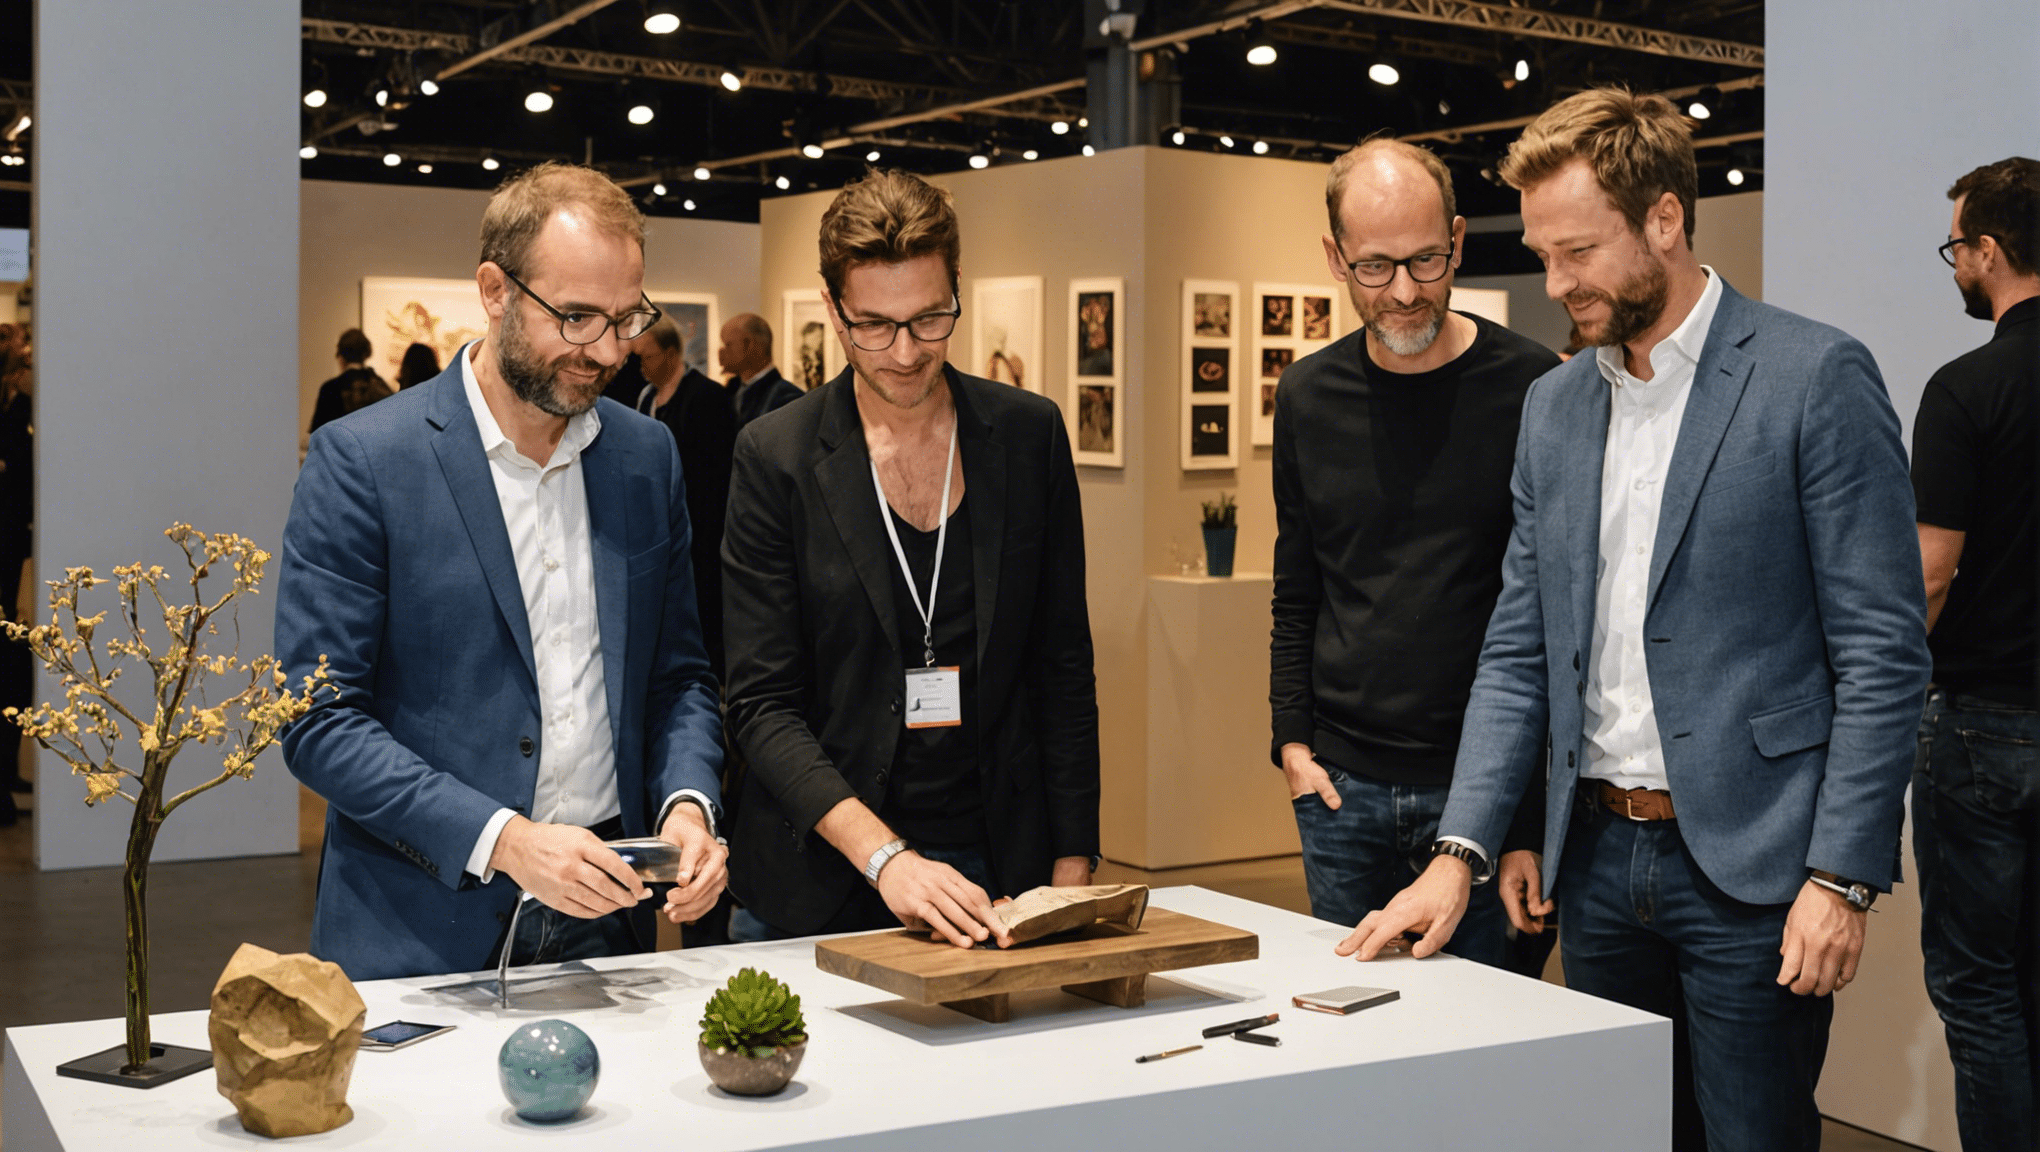 découvrez les créateurs belges à l’honneur au salon “soignies design”, une vitrine d'innovation et de talent. qu'est-ce qui rend ces créateurs si exceptionnels ?